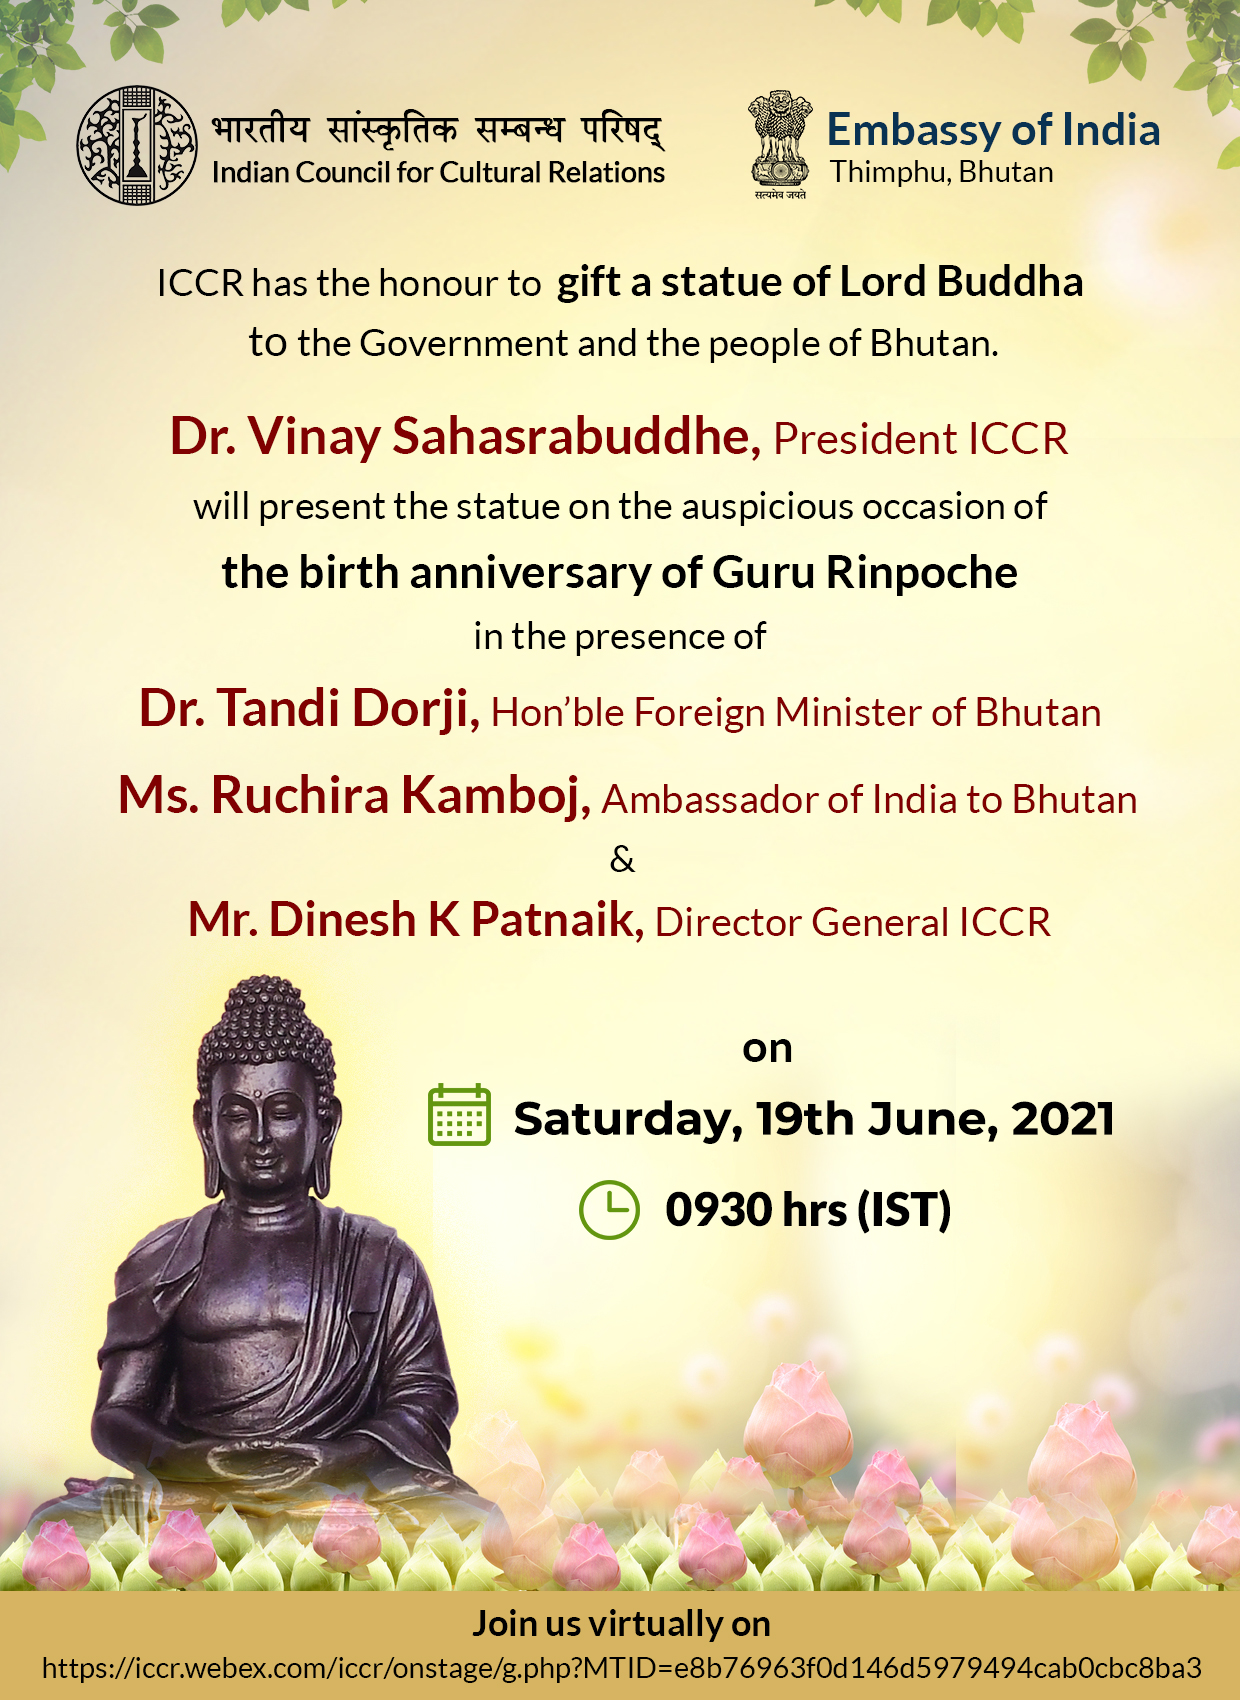 शनिवार 19 जून 2021 को सुबह 9.30 बजे भगवान बुद्ध की प्रतिमा का वर्चुअल "हैंडिंग ओवर समारोह"